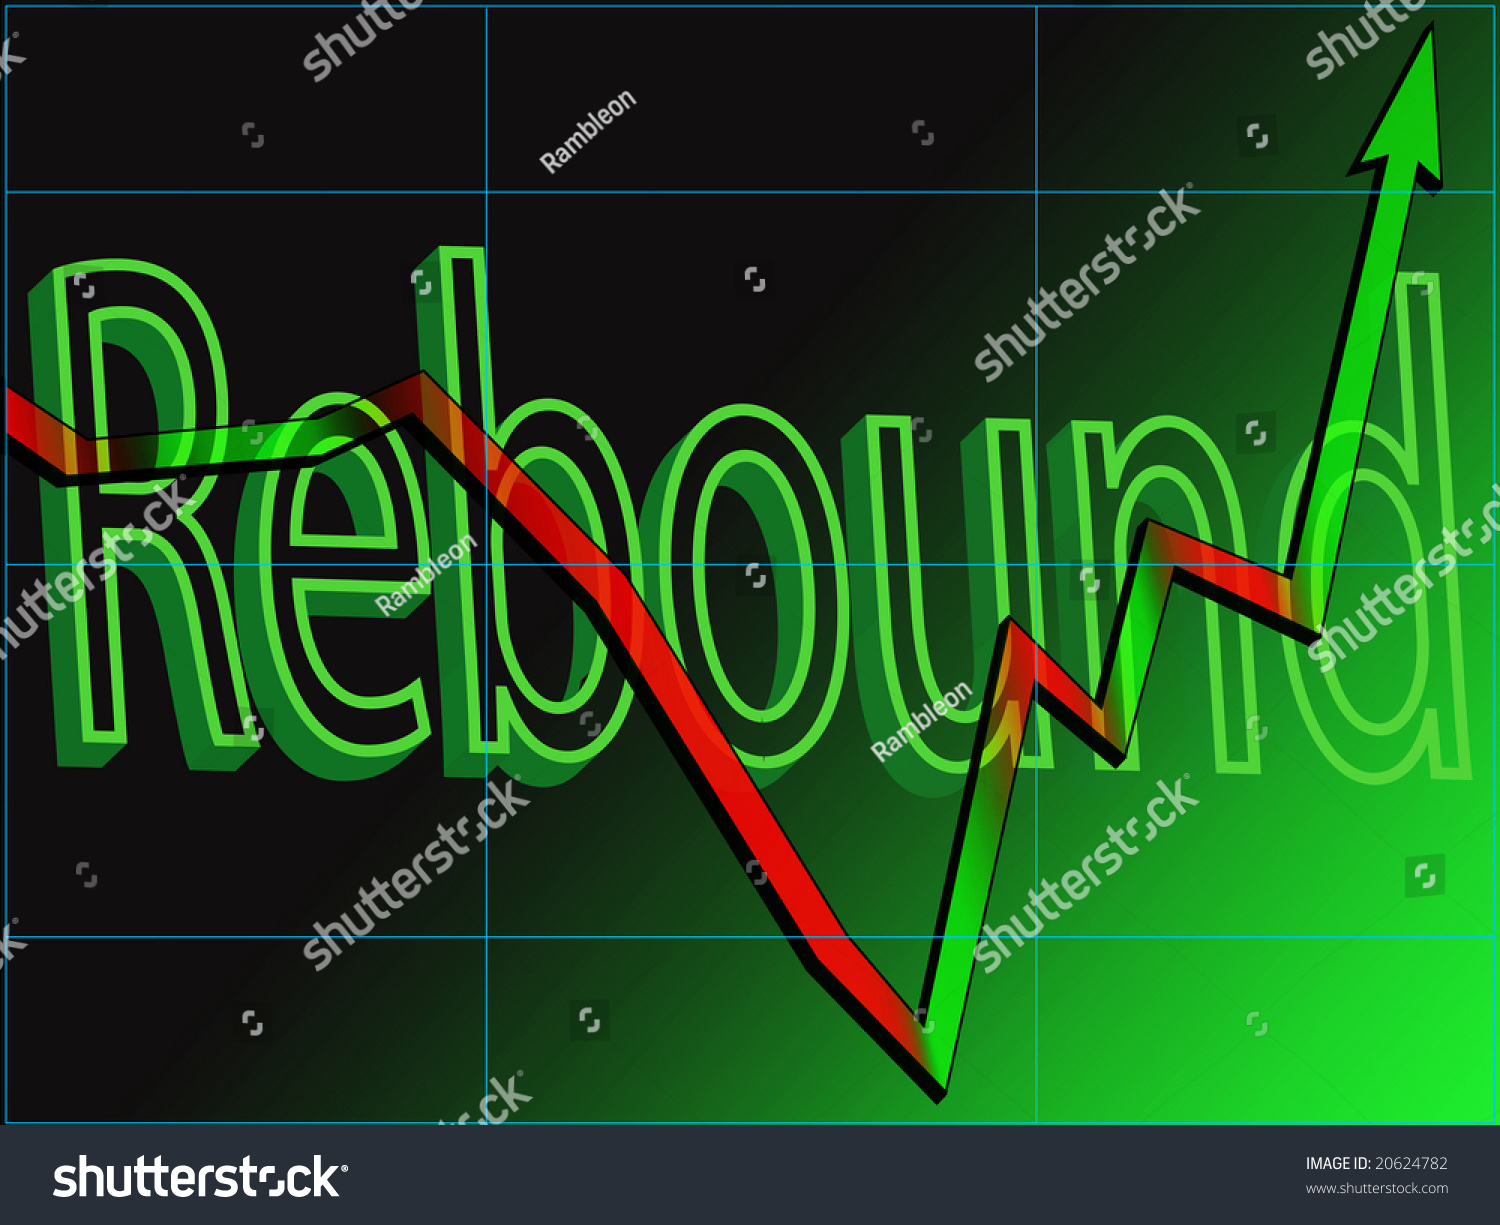 stock market rebound